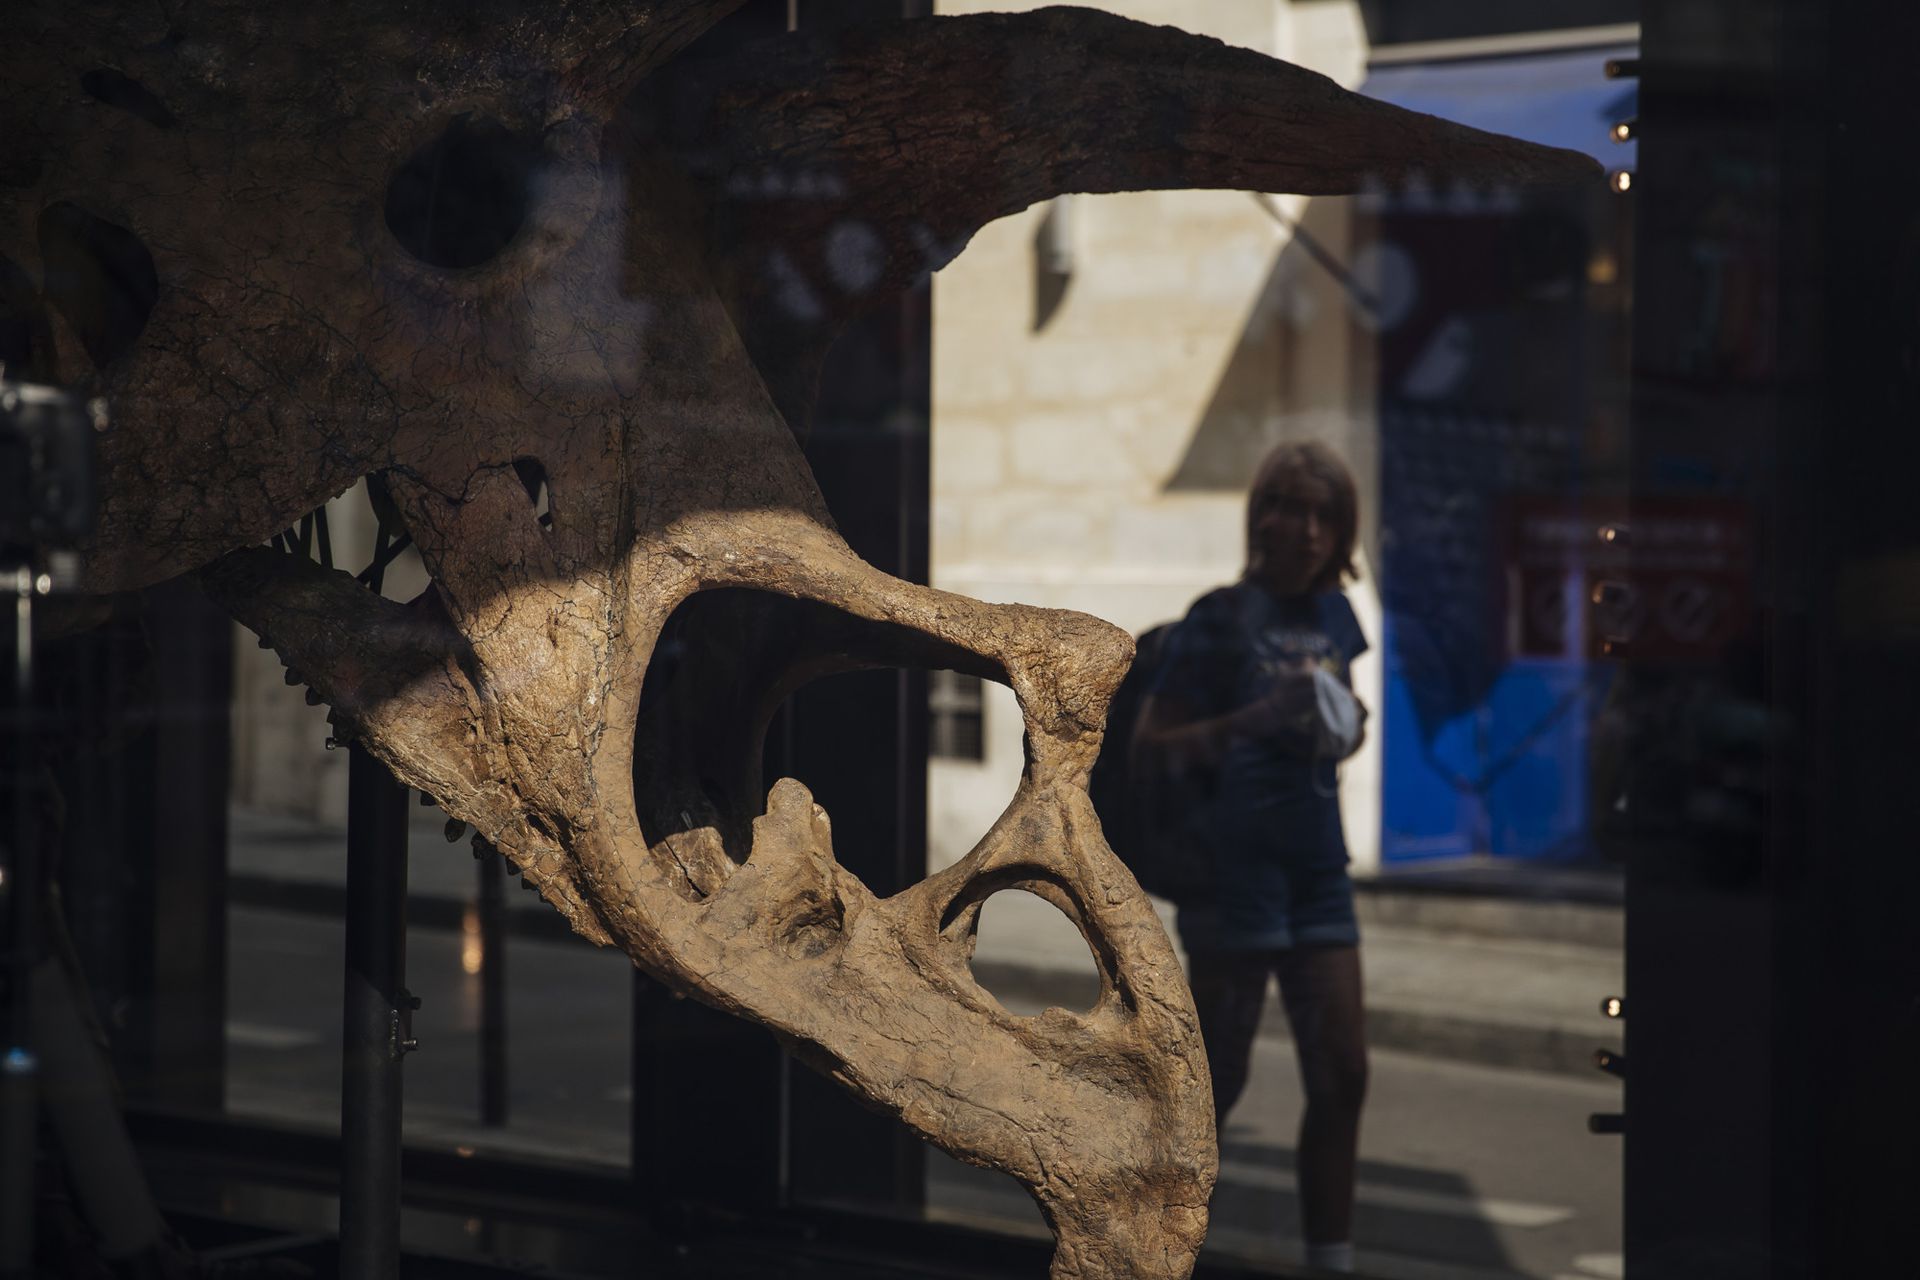 La gente pasa junto a Big John, el esqueleto de triceratops más grande conocido mientras lo ensamblan en una sala de exposición en París, hoy martes 31 de agosto de 2021